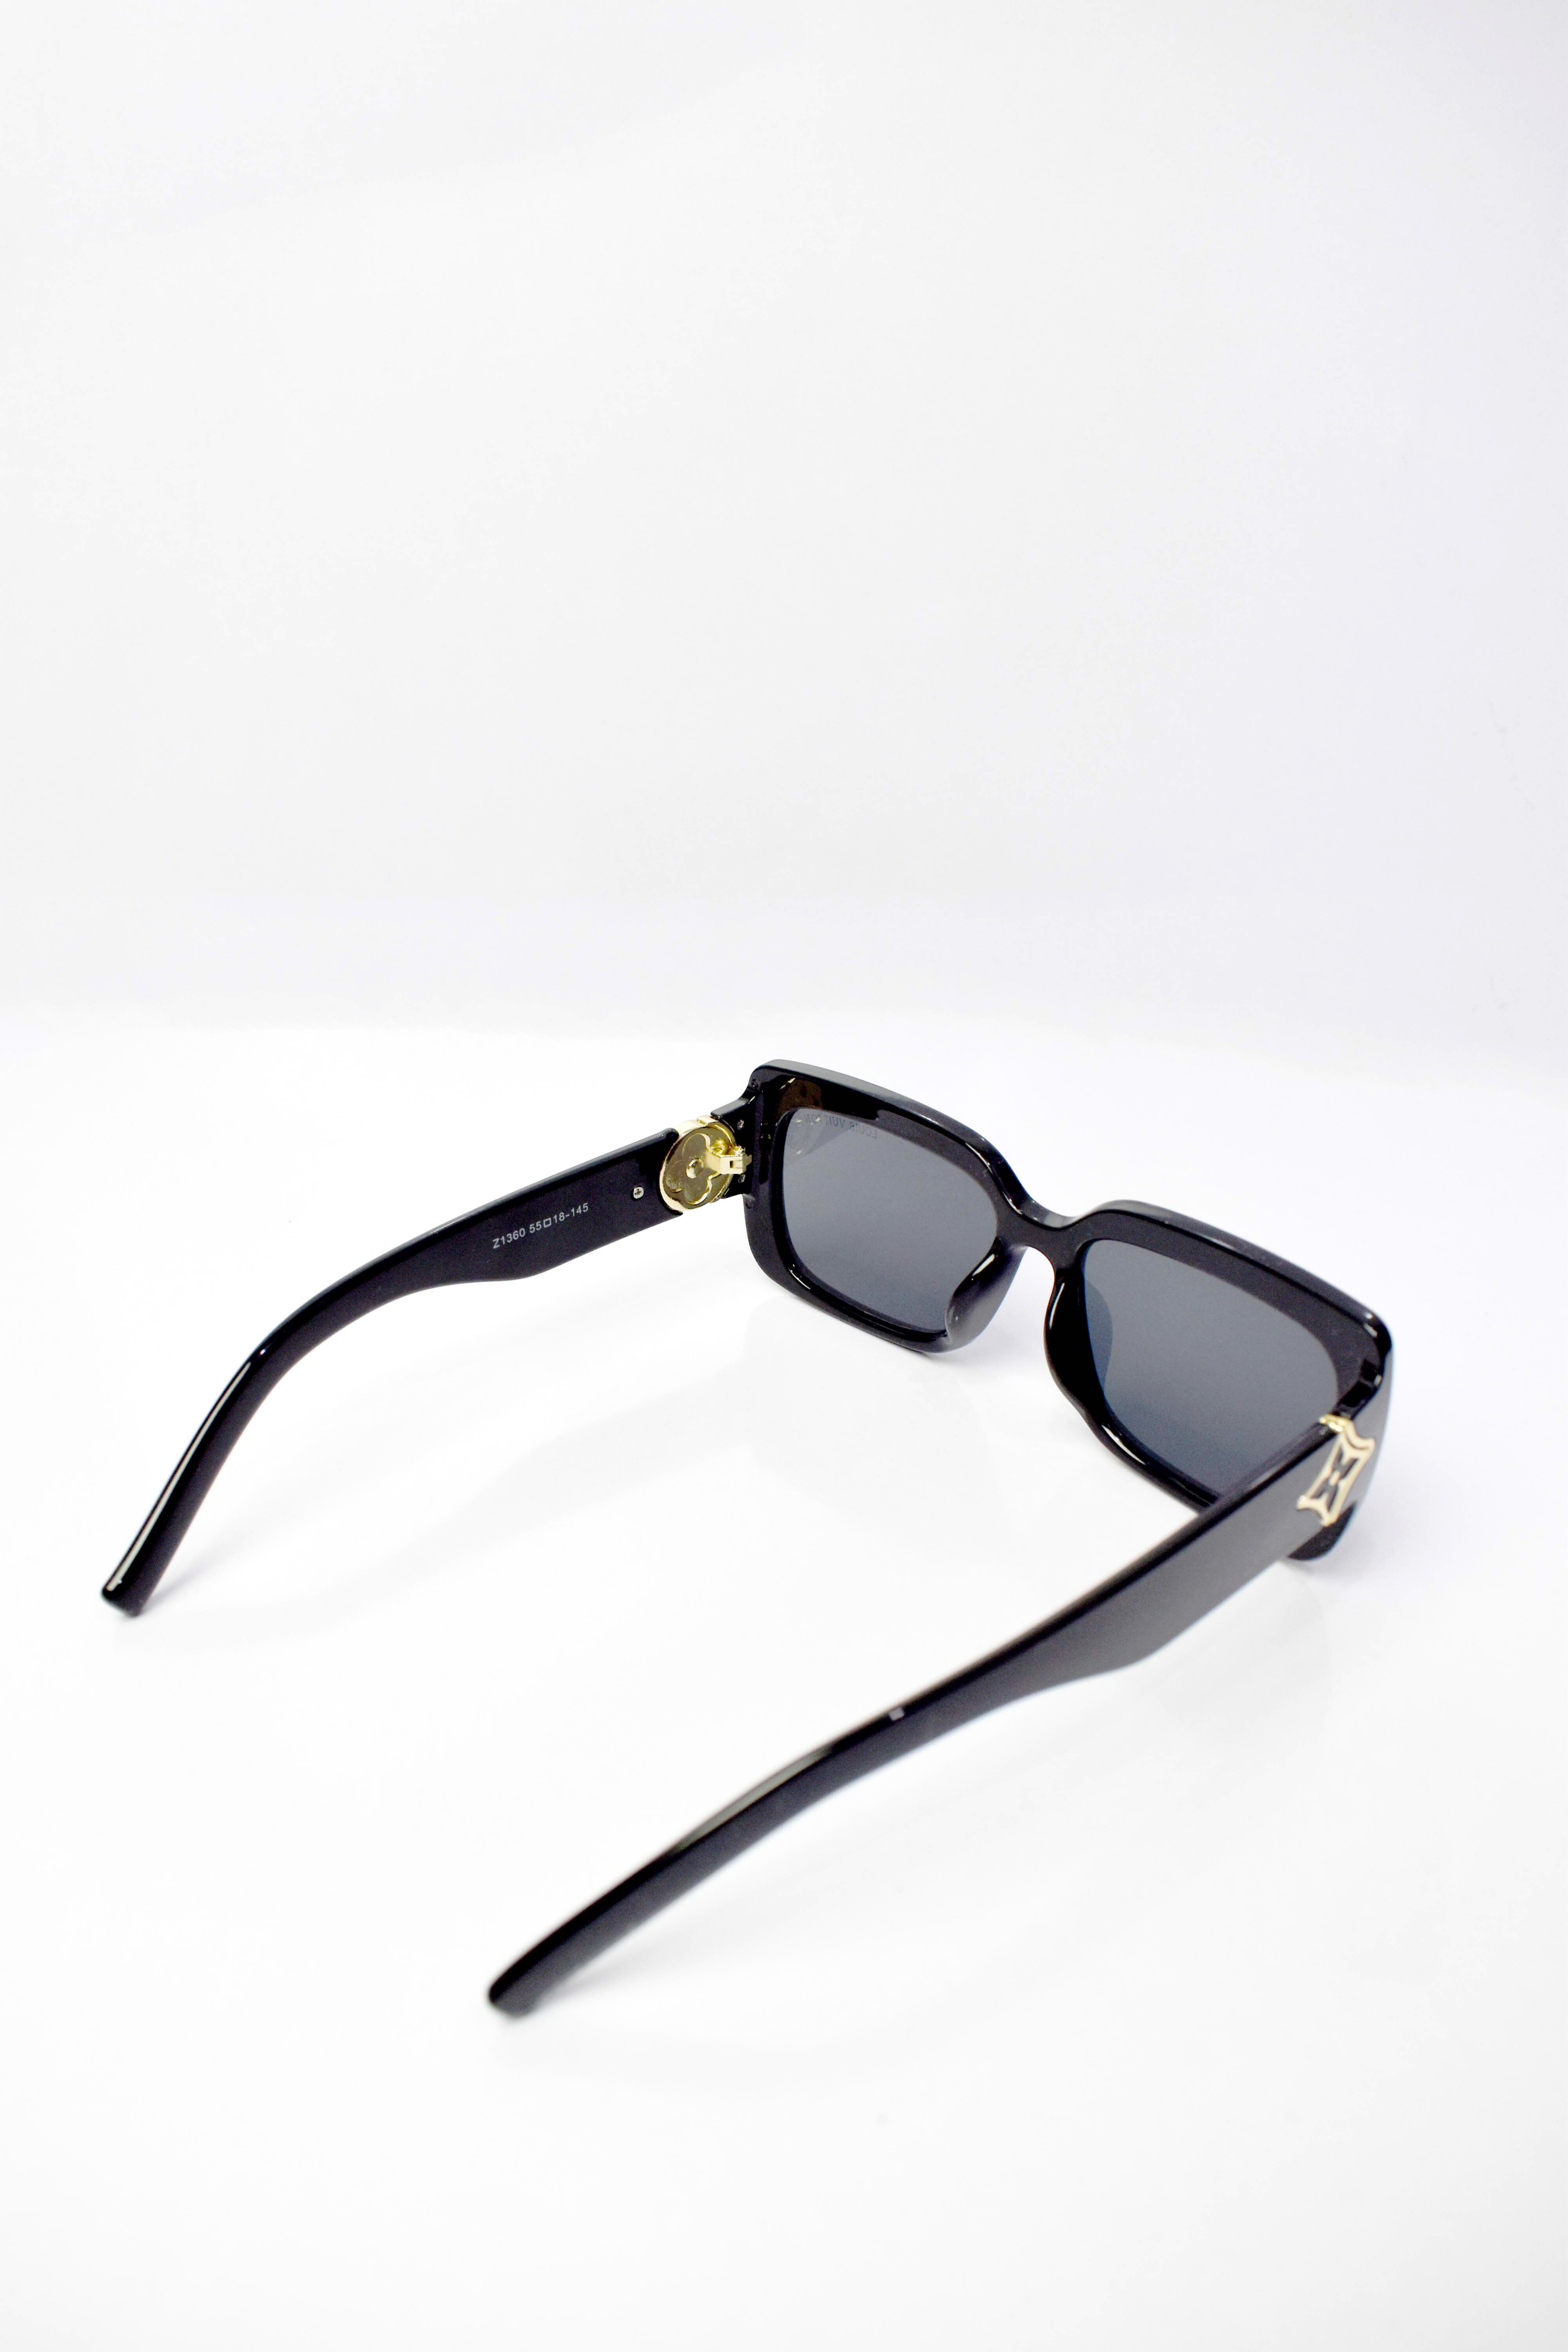 louis Vuitton Sun Glasses 0025